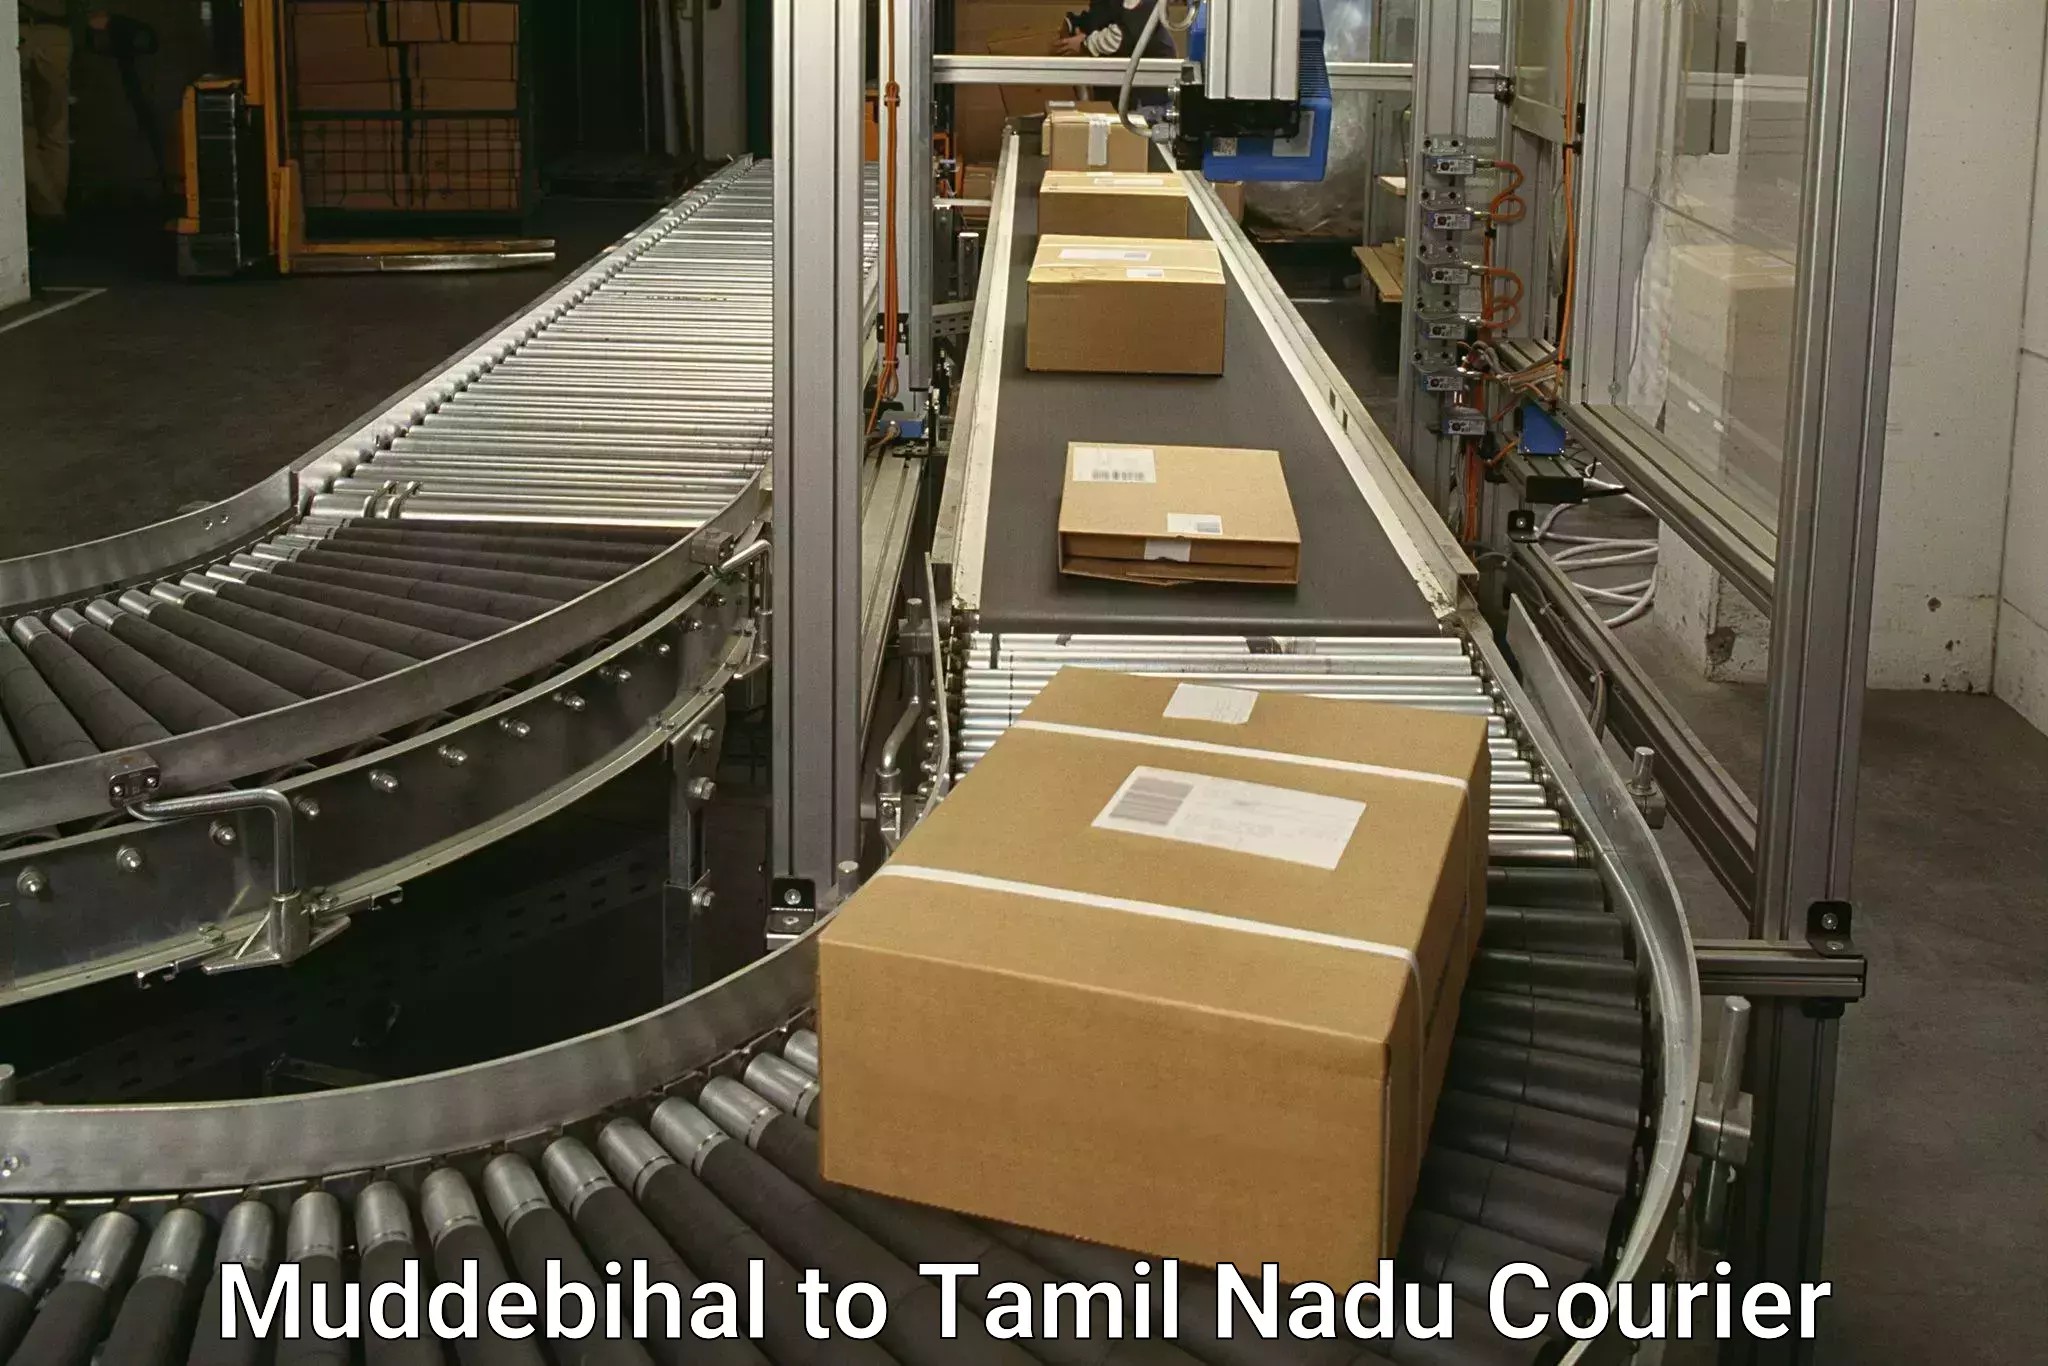 Budget-friendly shipping Muddebihal to Udumalaipettai